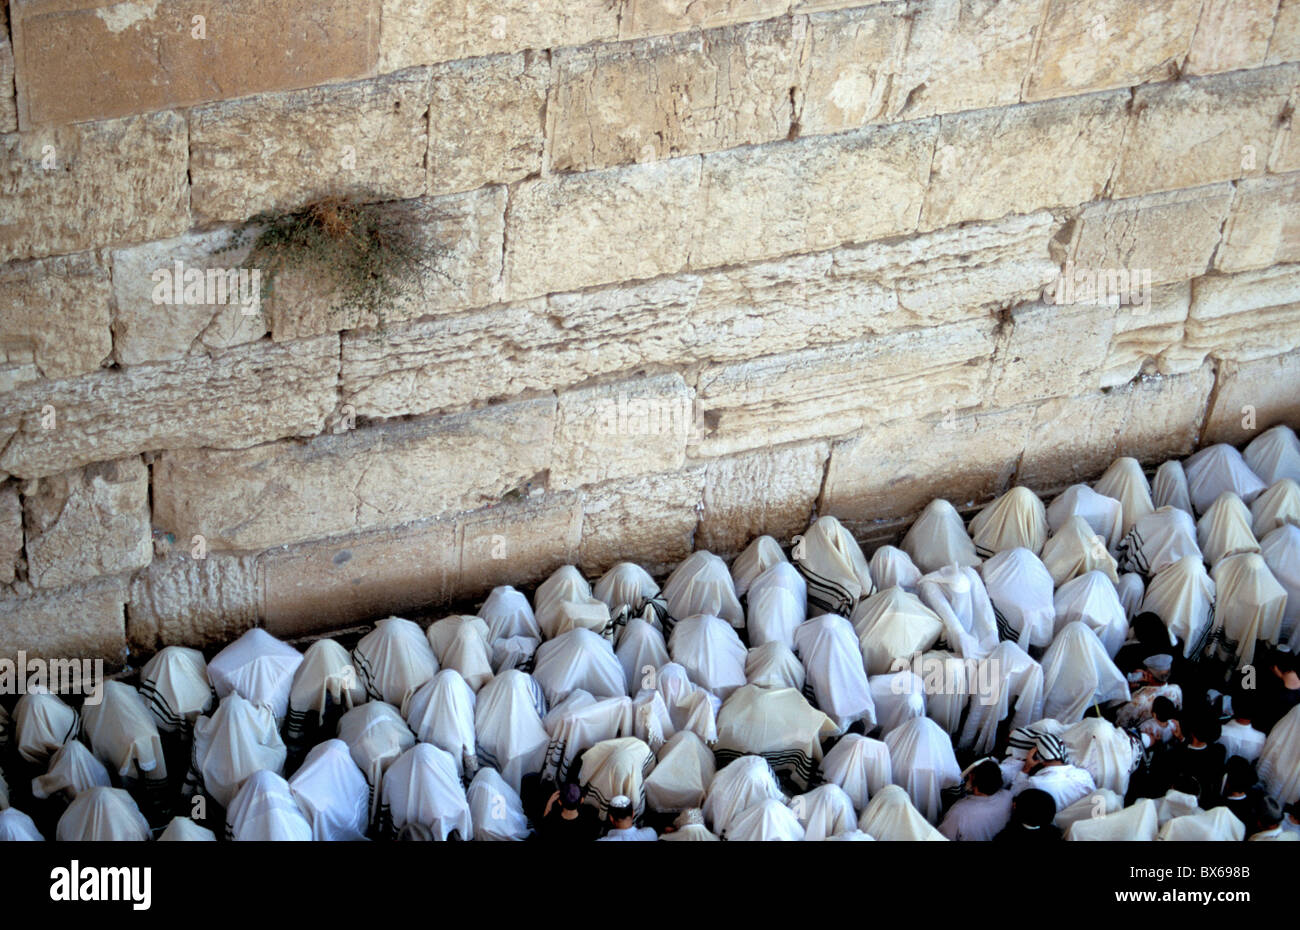 La cérémonie de bénédiction sacerdotale par le Mur occidental à Souccot, vieille ville, Jérusalem, Israël, Moyen Orient Banque D'Images